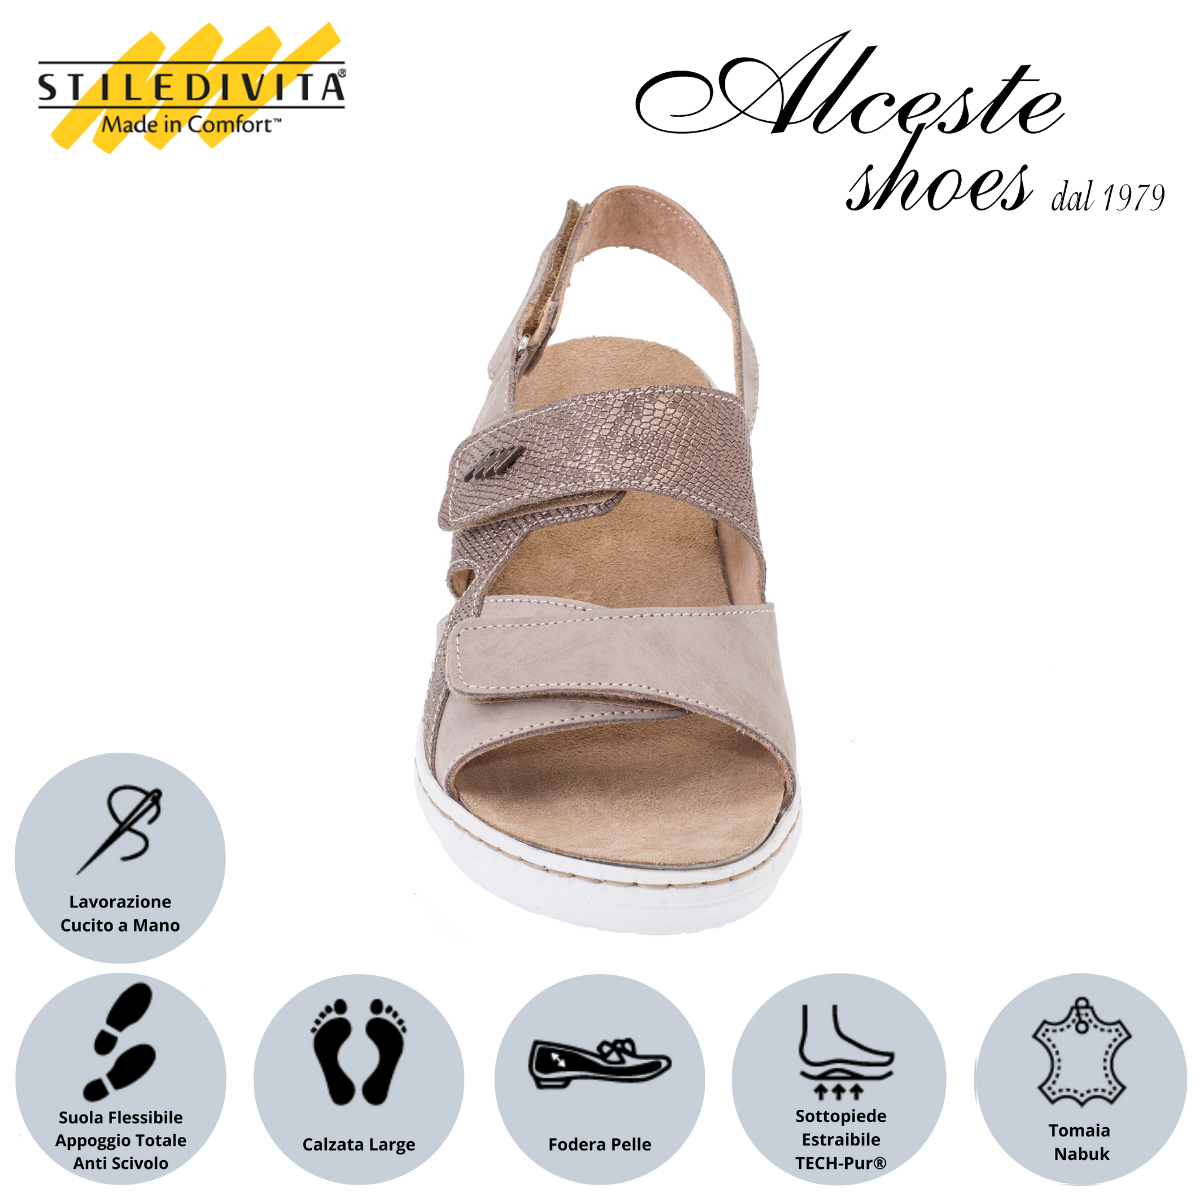 Sandalo con Strappi e Sottopiede Estraibile "Stiledivita" Art. 8526 Pelle Stampata Taupe e Nabuk Avana Alceste Shoes 53